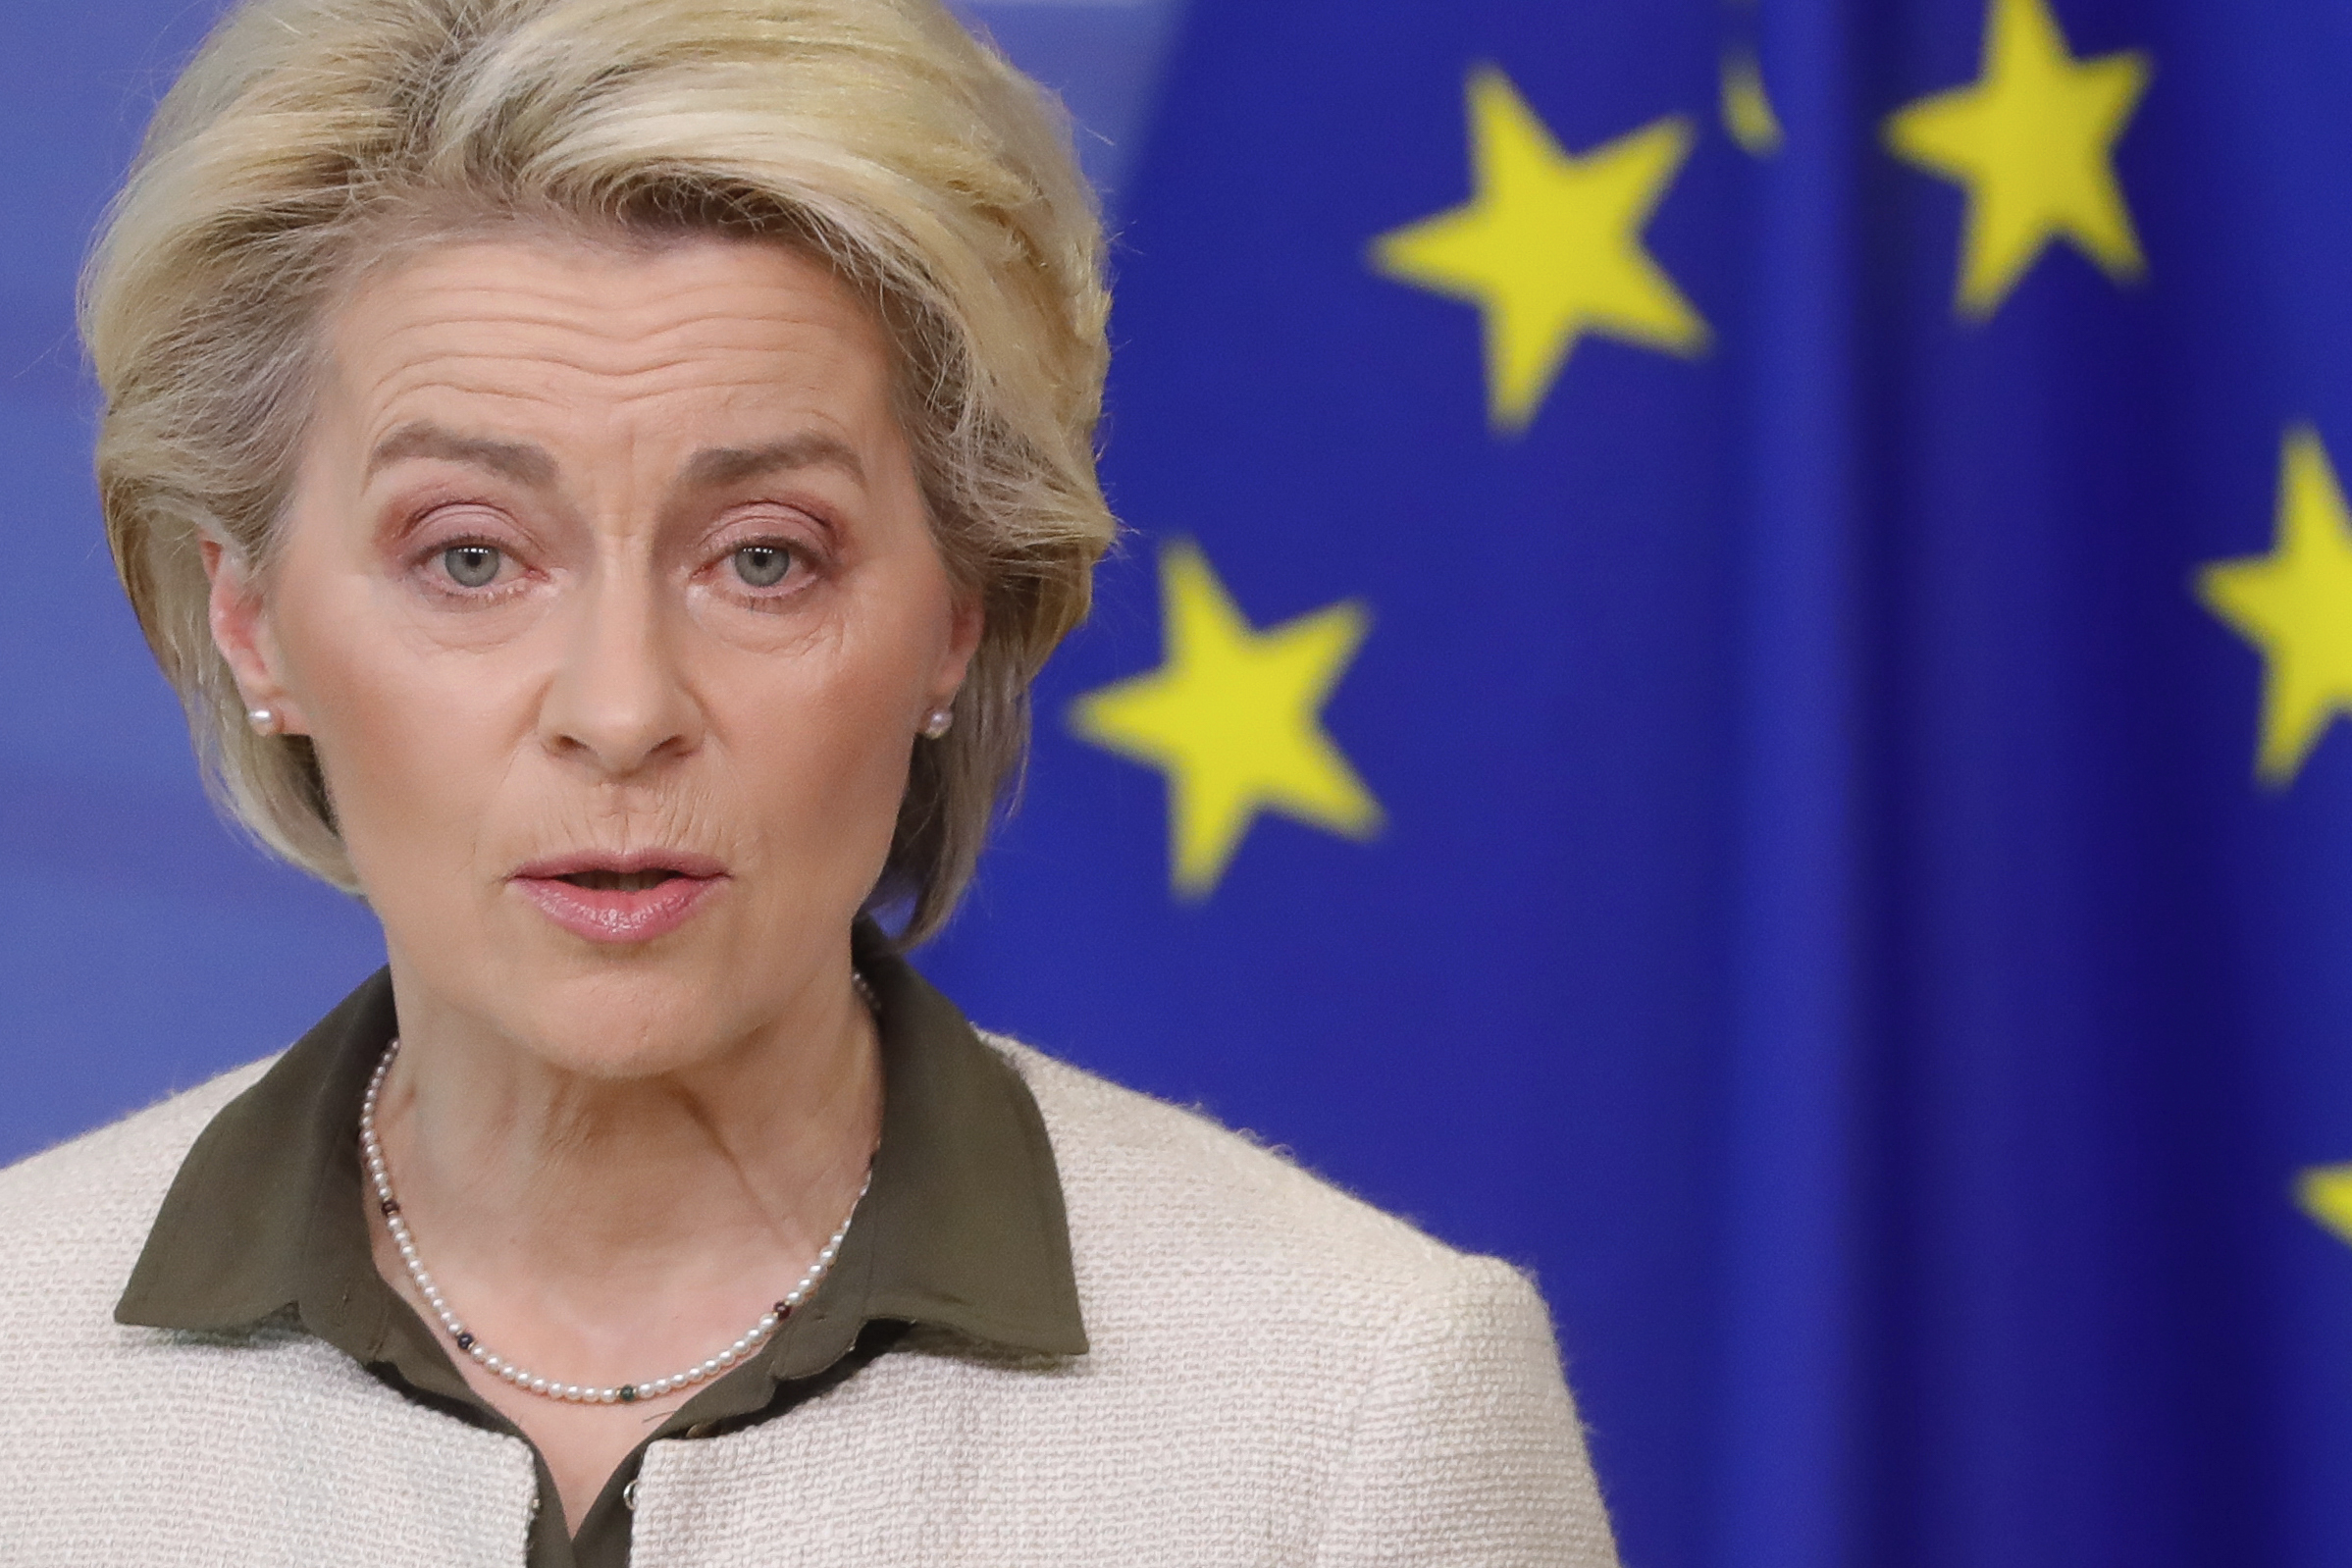 La présidente de la Commission européenne, Ursula von der Leyen, s'exprime lors d'un communiqué de presse au siège de l'UE à Bruxelles, en Belgique, le 27 février.